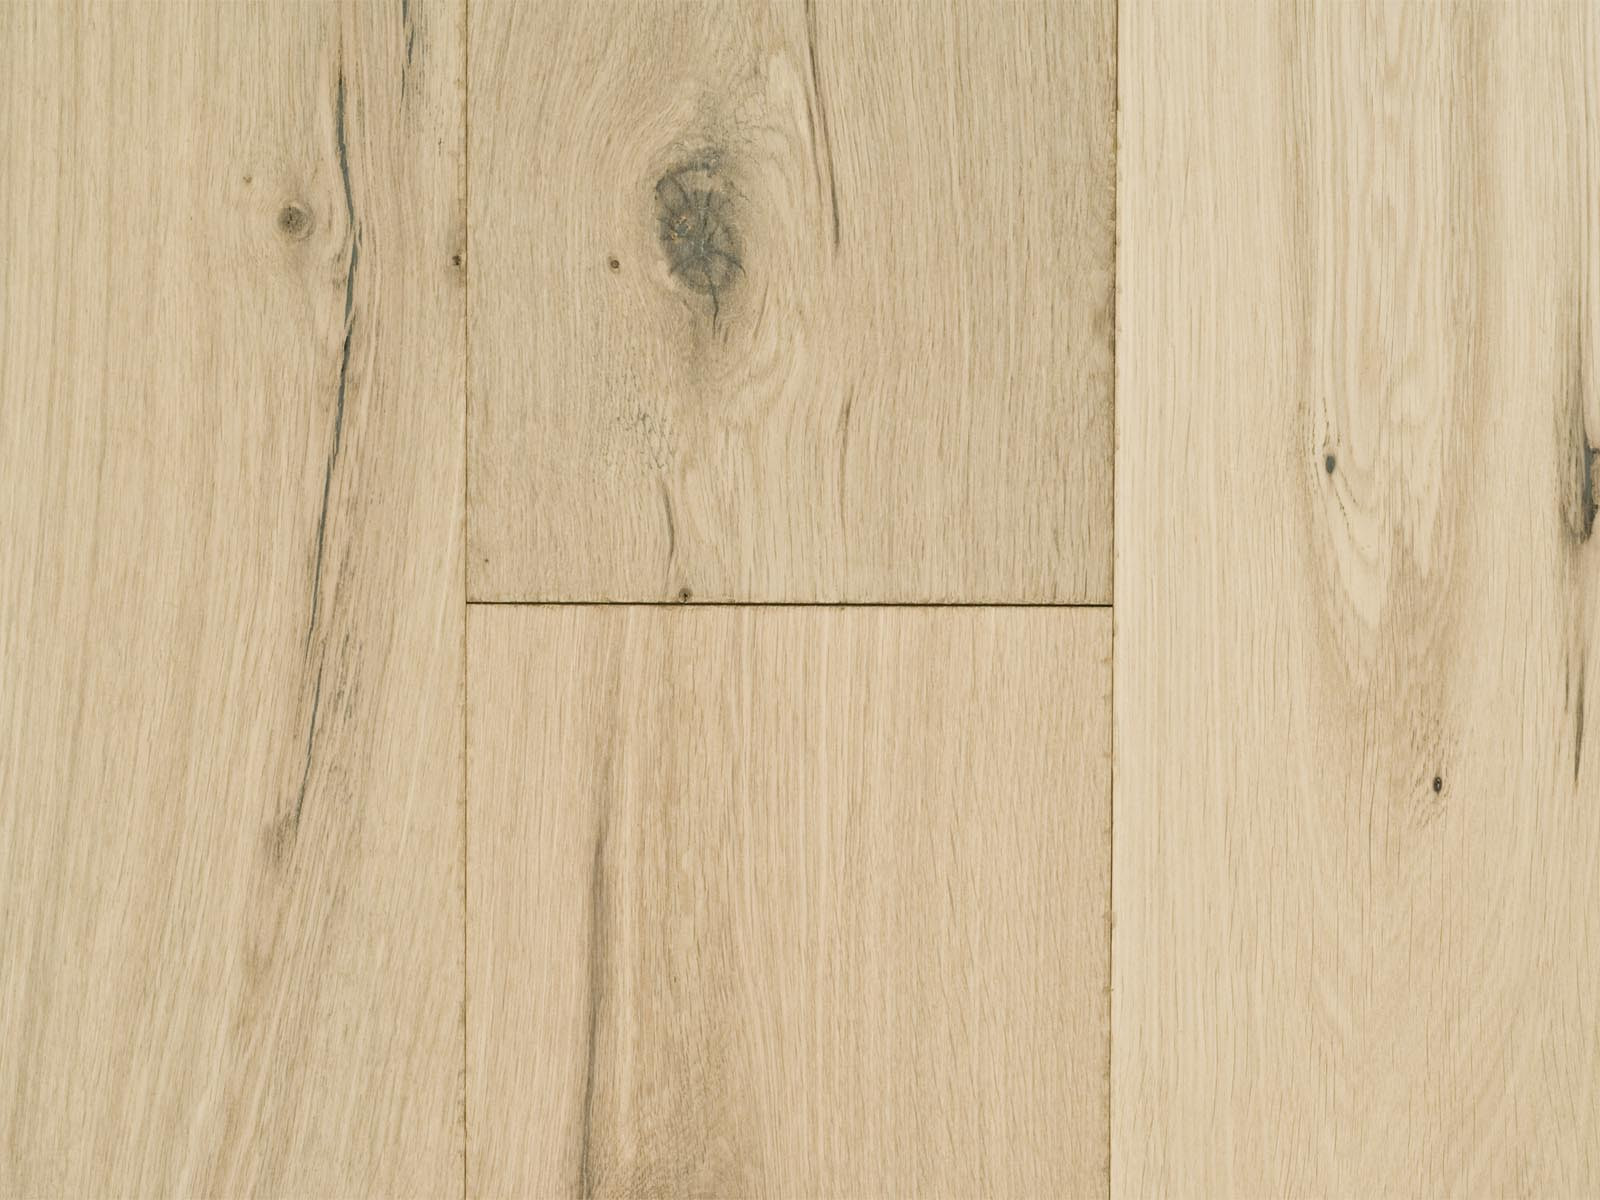 19 Recommended Hardwood Flooring Athens Ga Unique Flooring Ideas